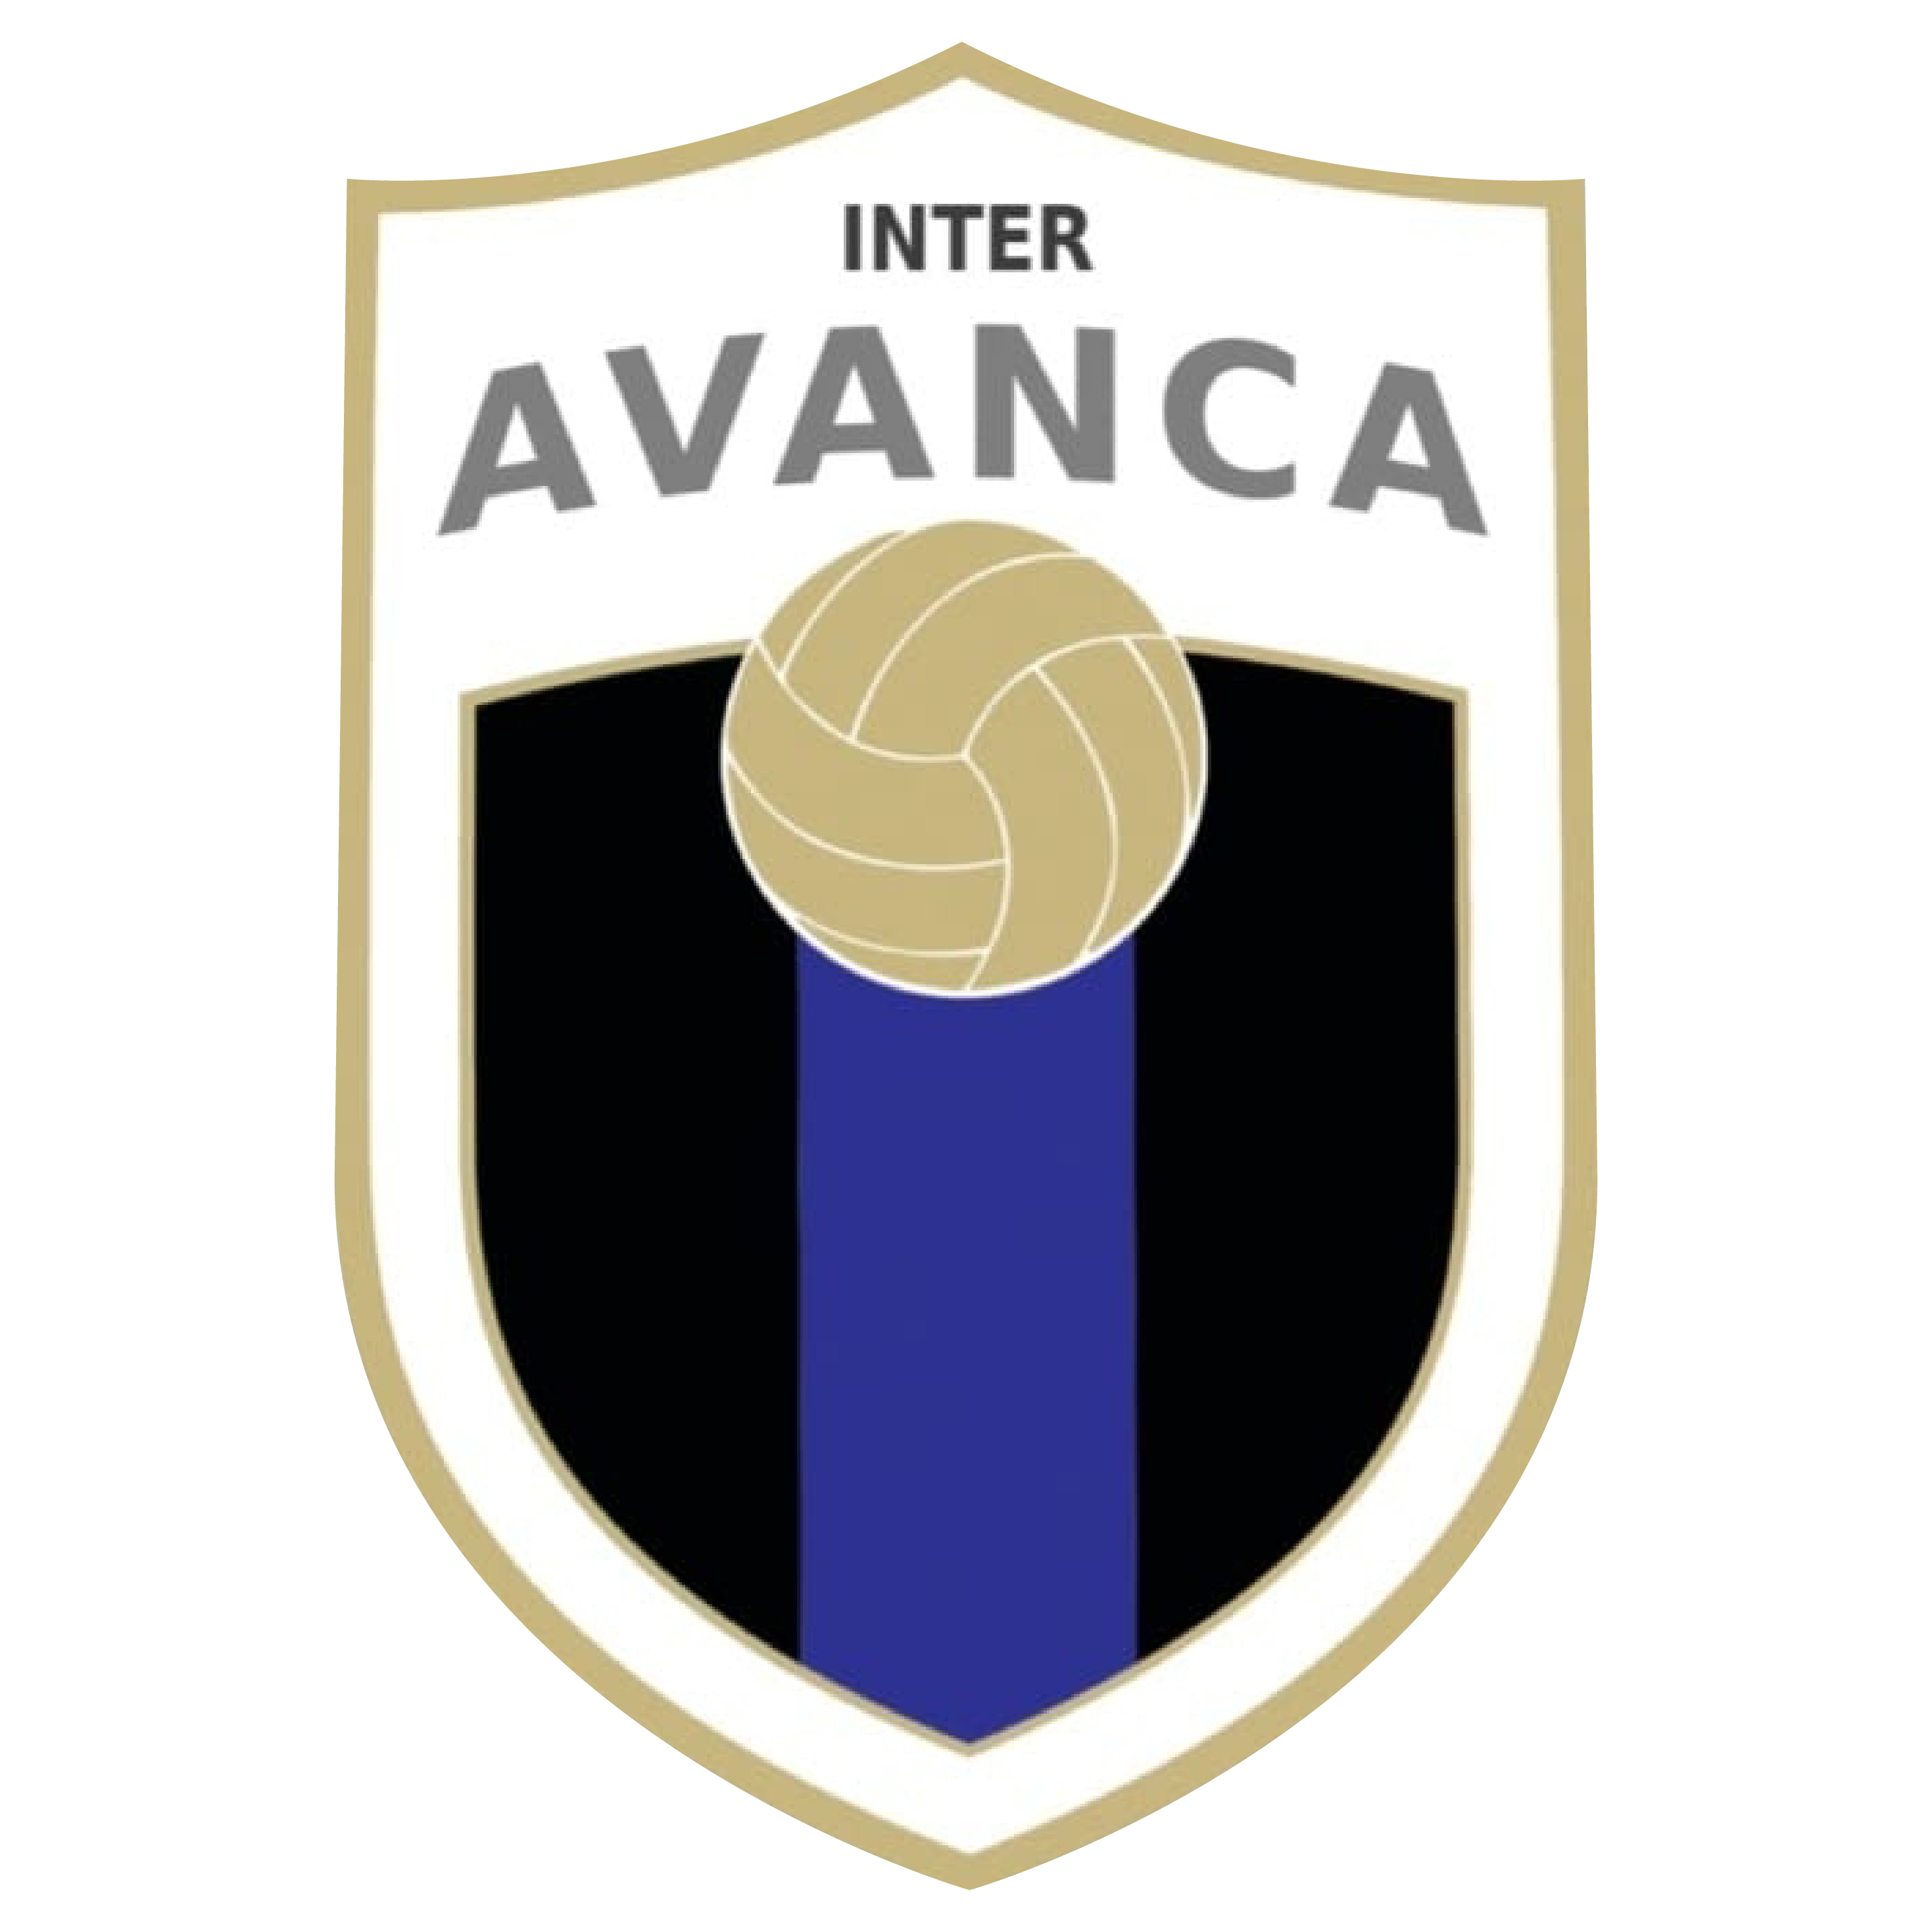 Inter Avanca